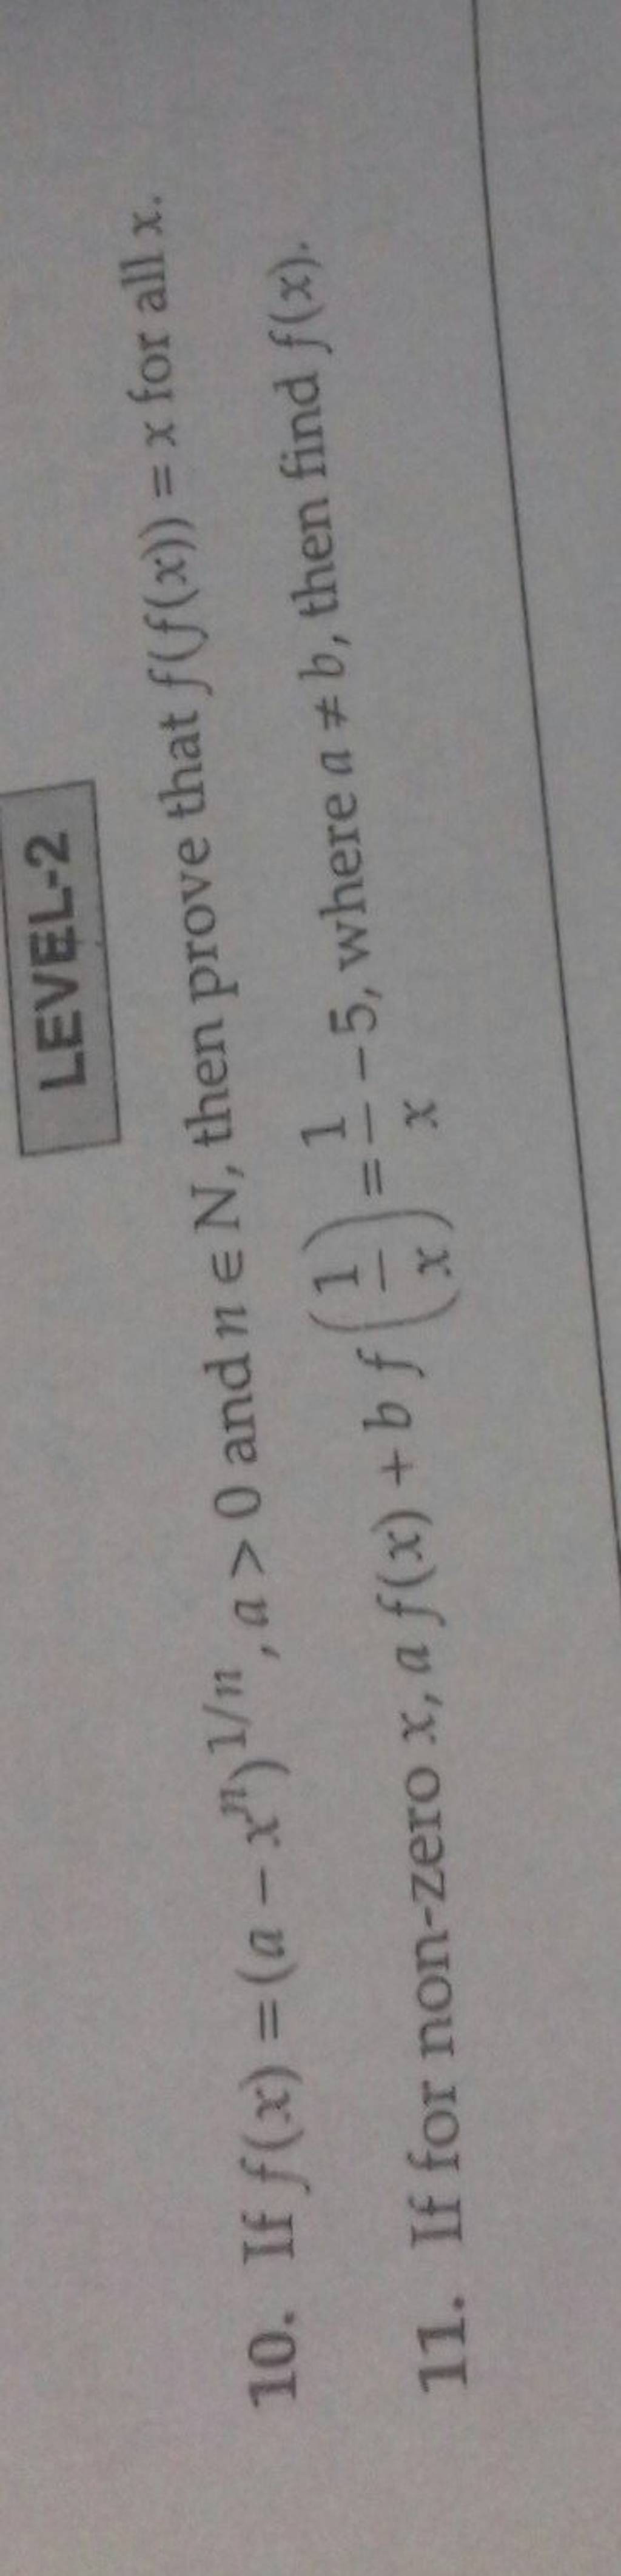 LEVEL-210. If f(x)=(a−xn)1/n,a>0 and n∈N, then prove that f(f(x))=x fo